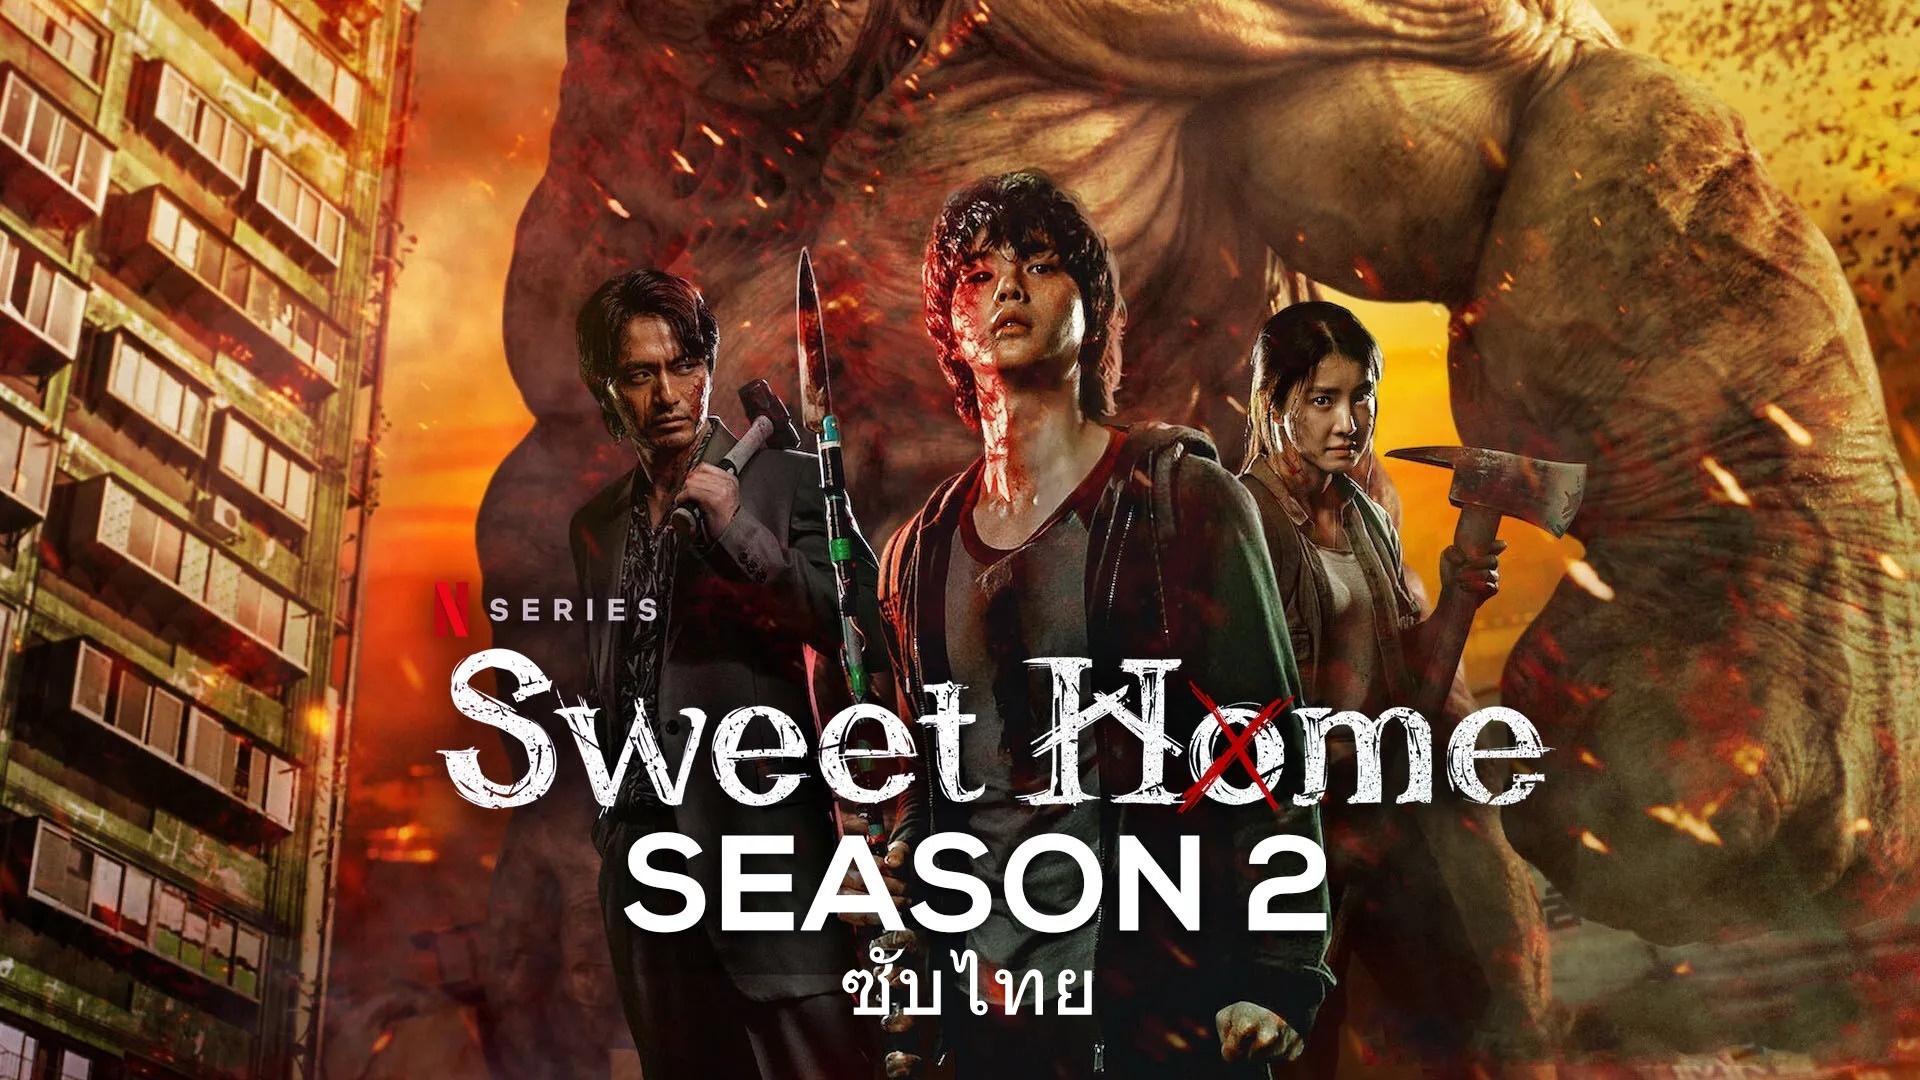 ดูซีรี่ย์เกาหลี Sweet Home Season 2 สวีทโฮม 2 ซับไทย